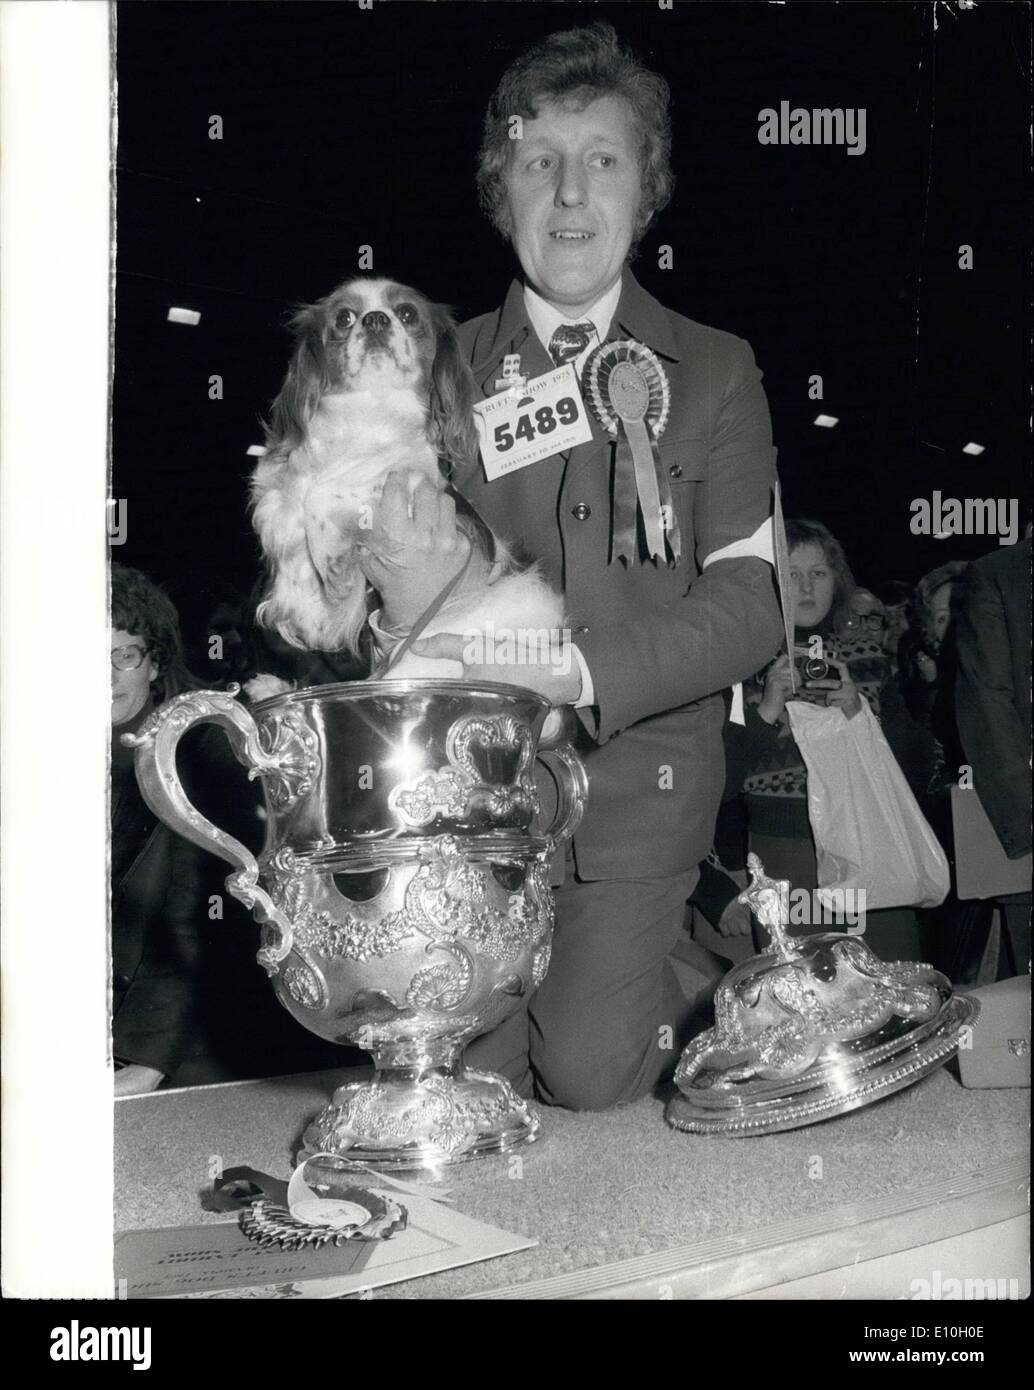 Febbraio 02, 1973 - il Crufts Campione del supremo. La foto mostra Alansmere Aquarius, a 17 mesi Cavalier King Charles Spaniel, che si è aggiudicato la suprema campionato a cruff's Dog Show di sabato, nella foto con il suo proprietario congiunto, il sig. John Evans, di Bristol. Foto Stock